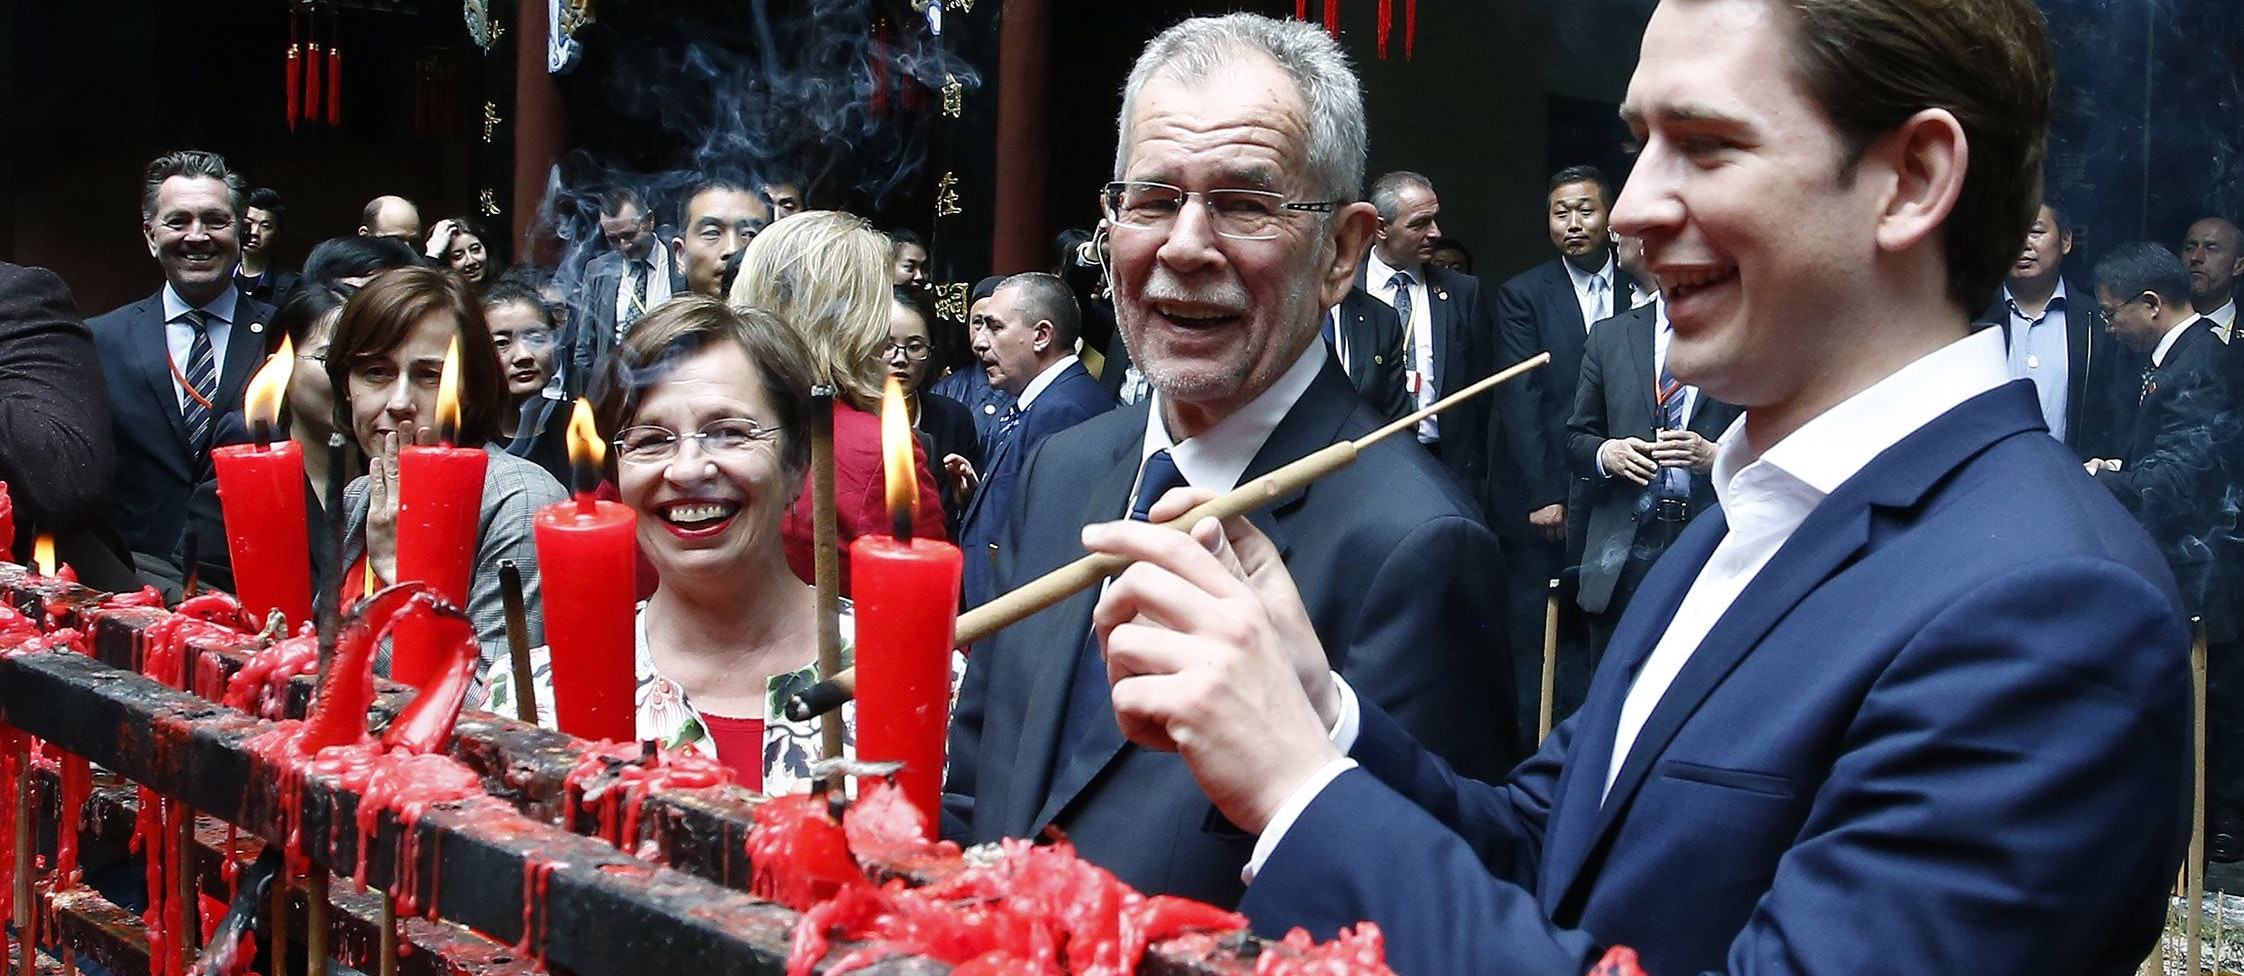 Doris Schmidauer, Bundespräsident Alexander Van der Bellen und Bundeskanzler Sebastian Kurz (r.) beim Besuch des Jianfu Palasts in China 2018